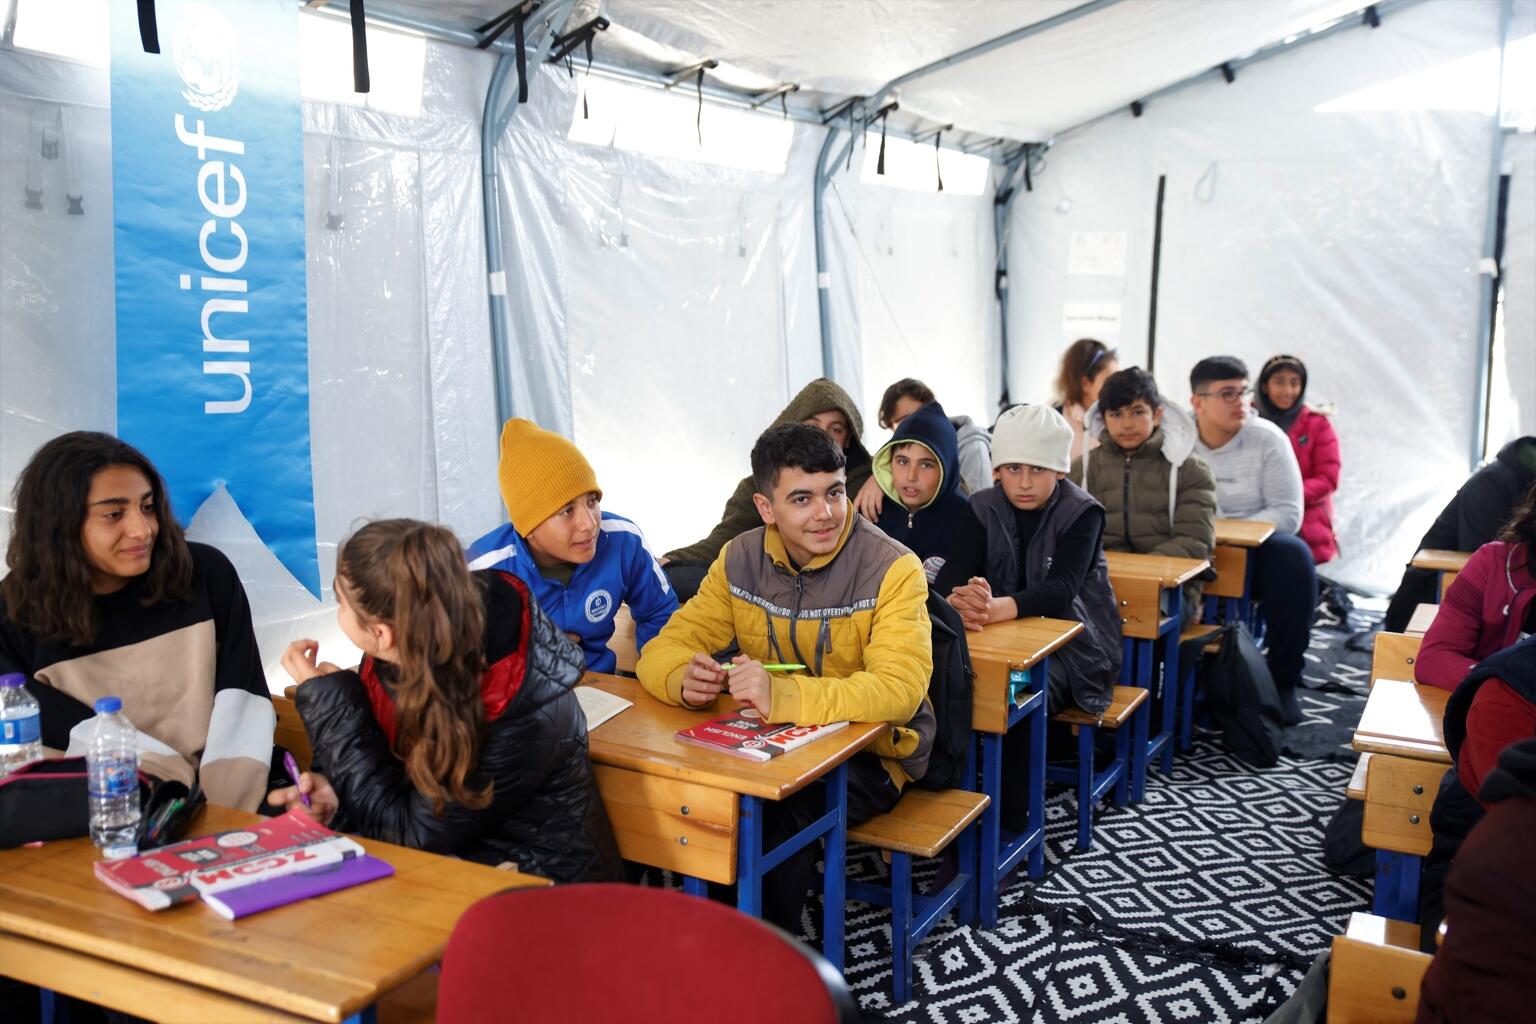 トルコ南東部を襲った2度の大地震の後、アンタキヤの仮設避難所にユニセフ設置したテント教室で、授業を受ける子どもたち。（トルコ、2023年3月10日撮影）